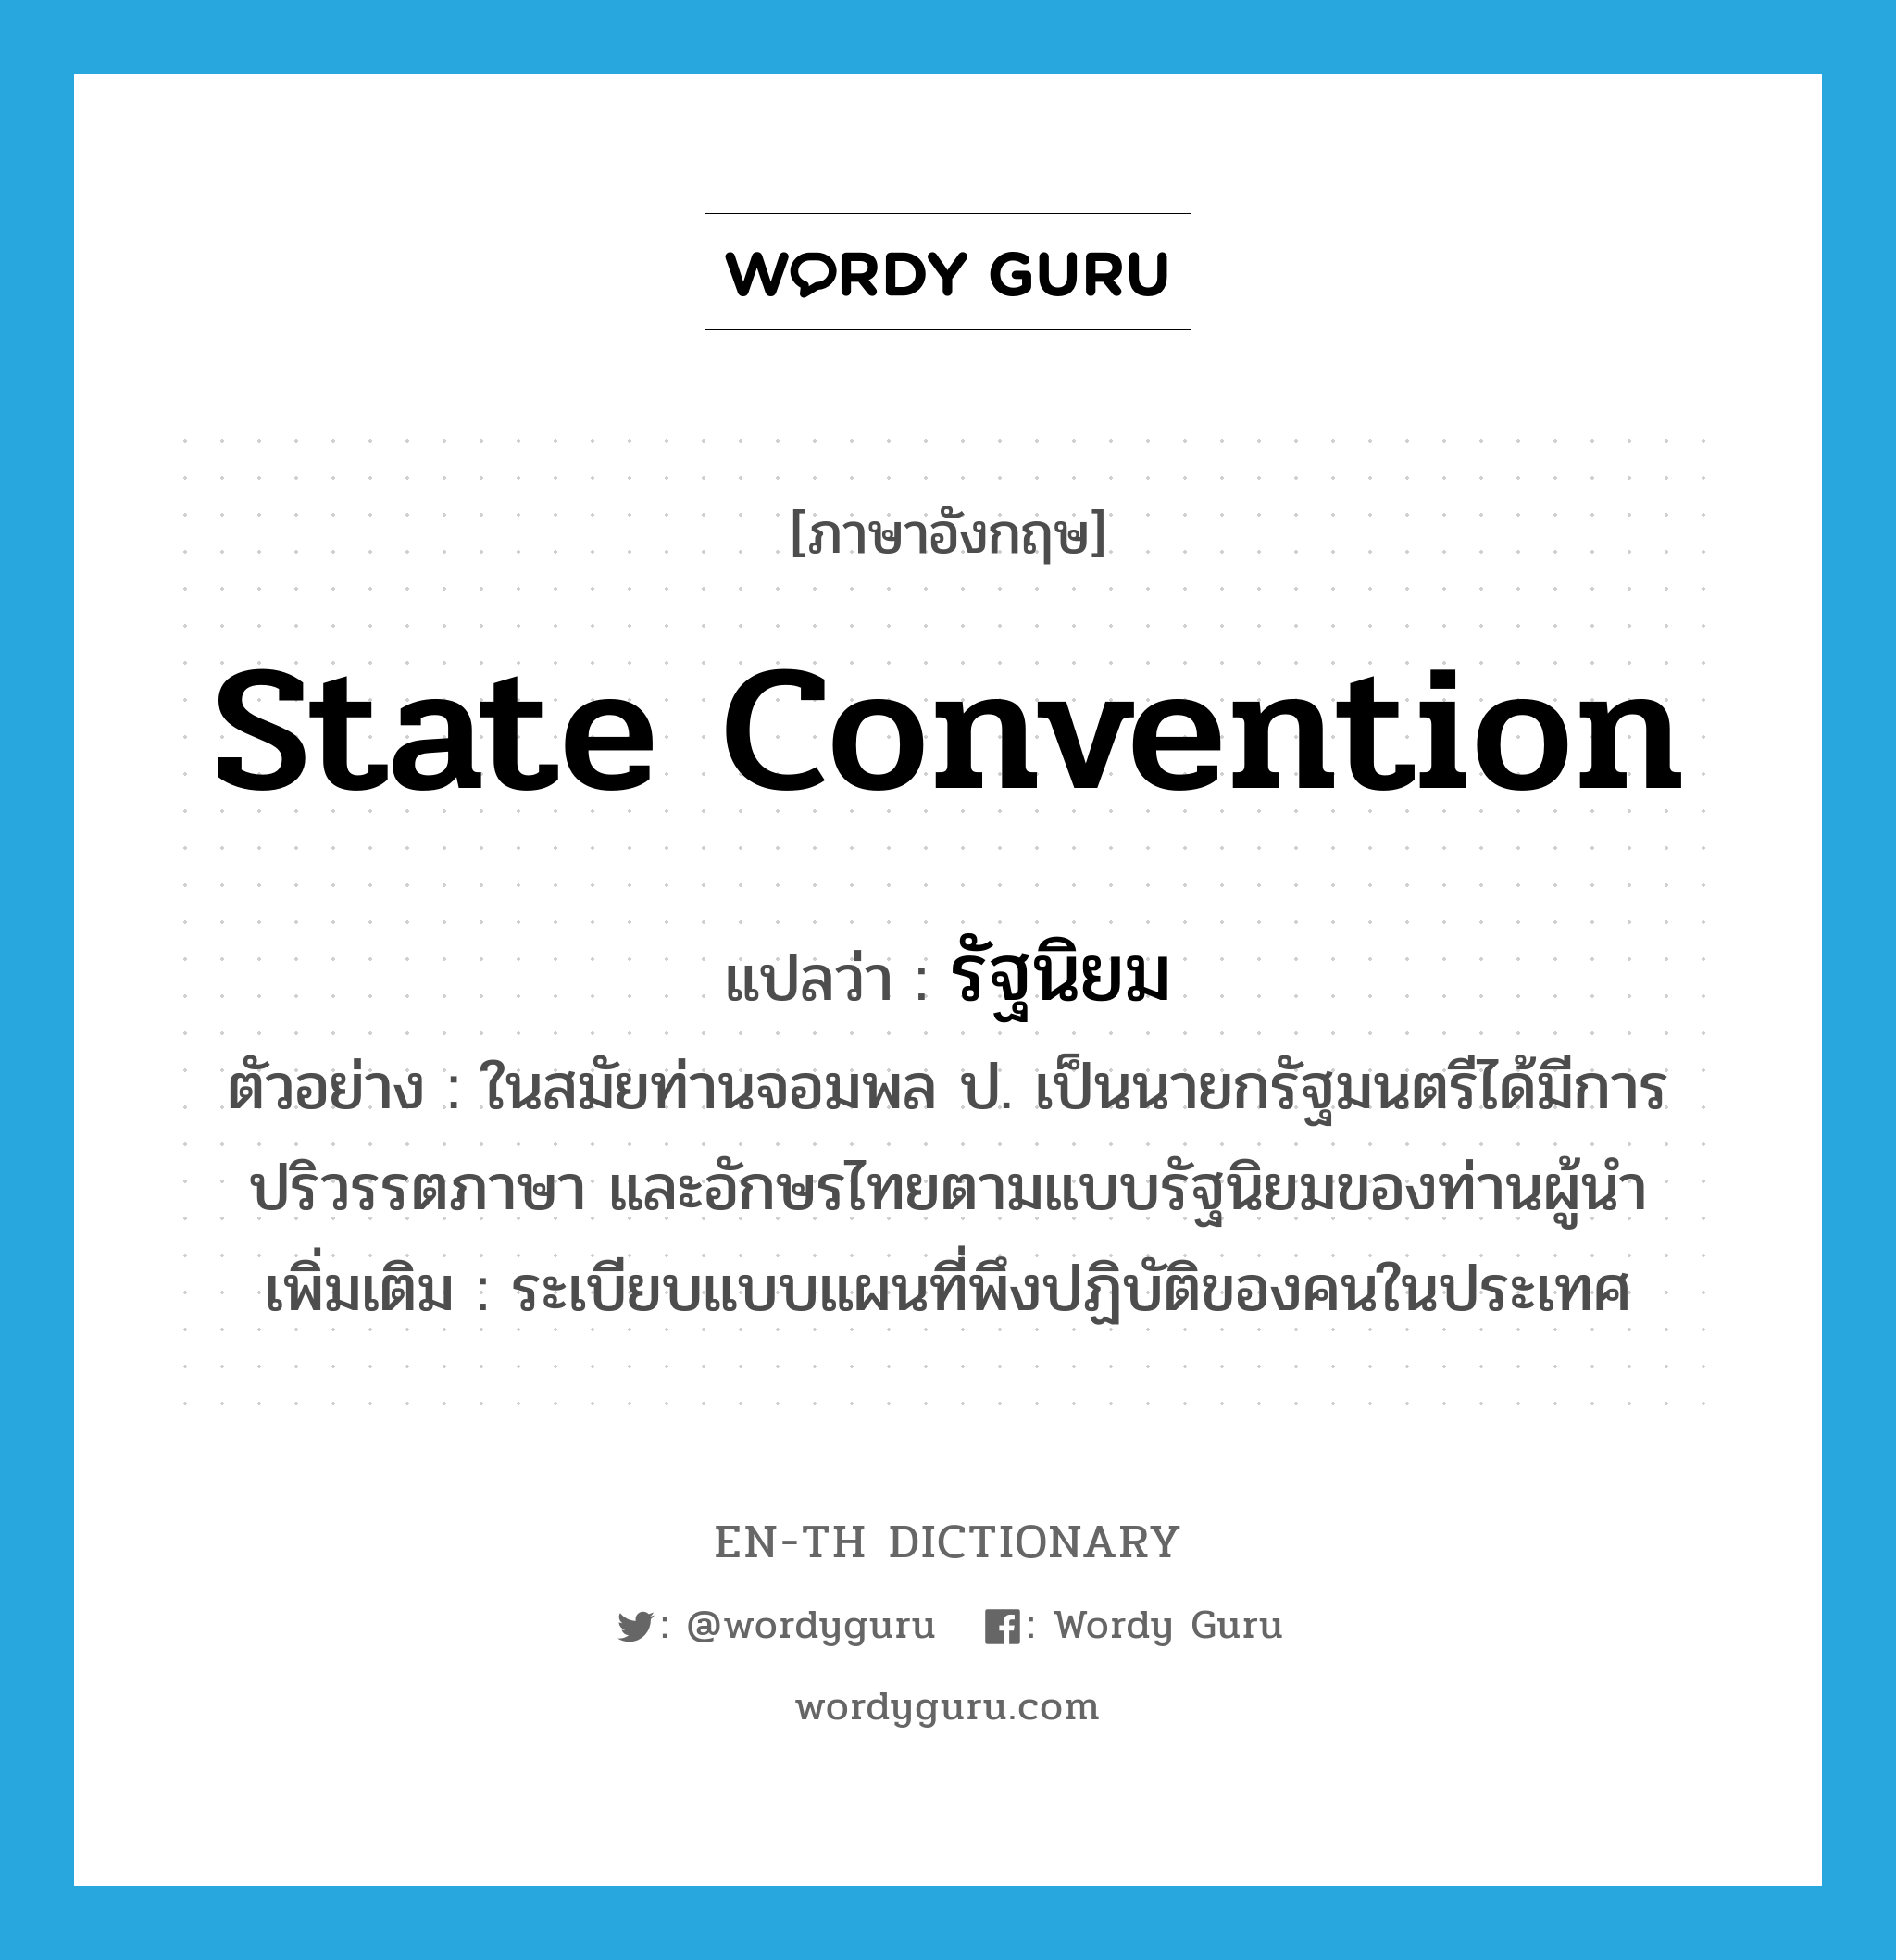 รัฐนิยม ภาษาอังกฤษ?, คำศัพท์ภาษาอังกฤษ รัฐนิยม แปลว่า state convention ประเภท N ตัวอย่าง ในสมัยท่านจอมพล ป. เป็นนายกรัฐมนตรีได้มีการปริวรรตภาษา และอักษรไทยตามแบบรัฐนิยมของท่านผู้นำ เพิ่มเติม ระเบียบแบบแผนที่พึงปฏิบัติของคนในประเทศ หมวด N